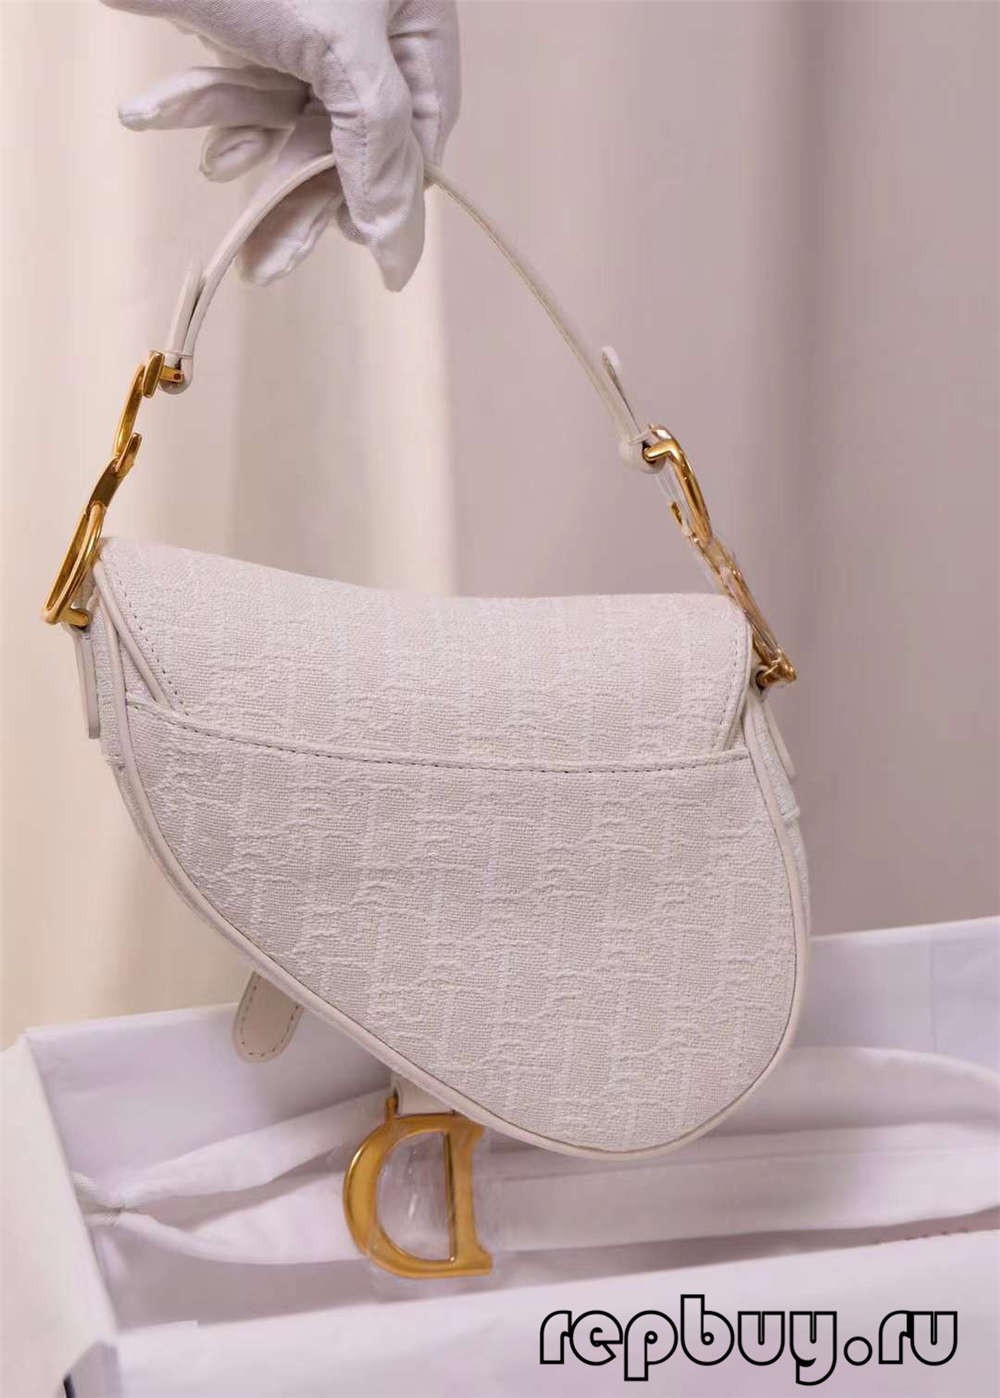 Dior top replica bags white saddle bag 21cm small (2022 Edition)-Best Quality Fake designer Bag Review, Replica designer bag ru